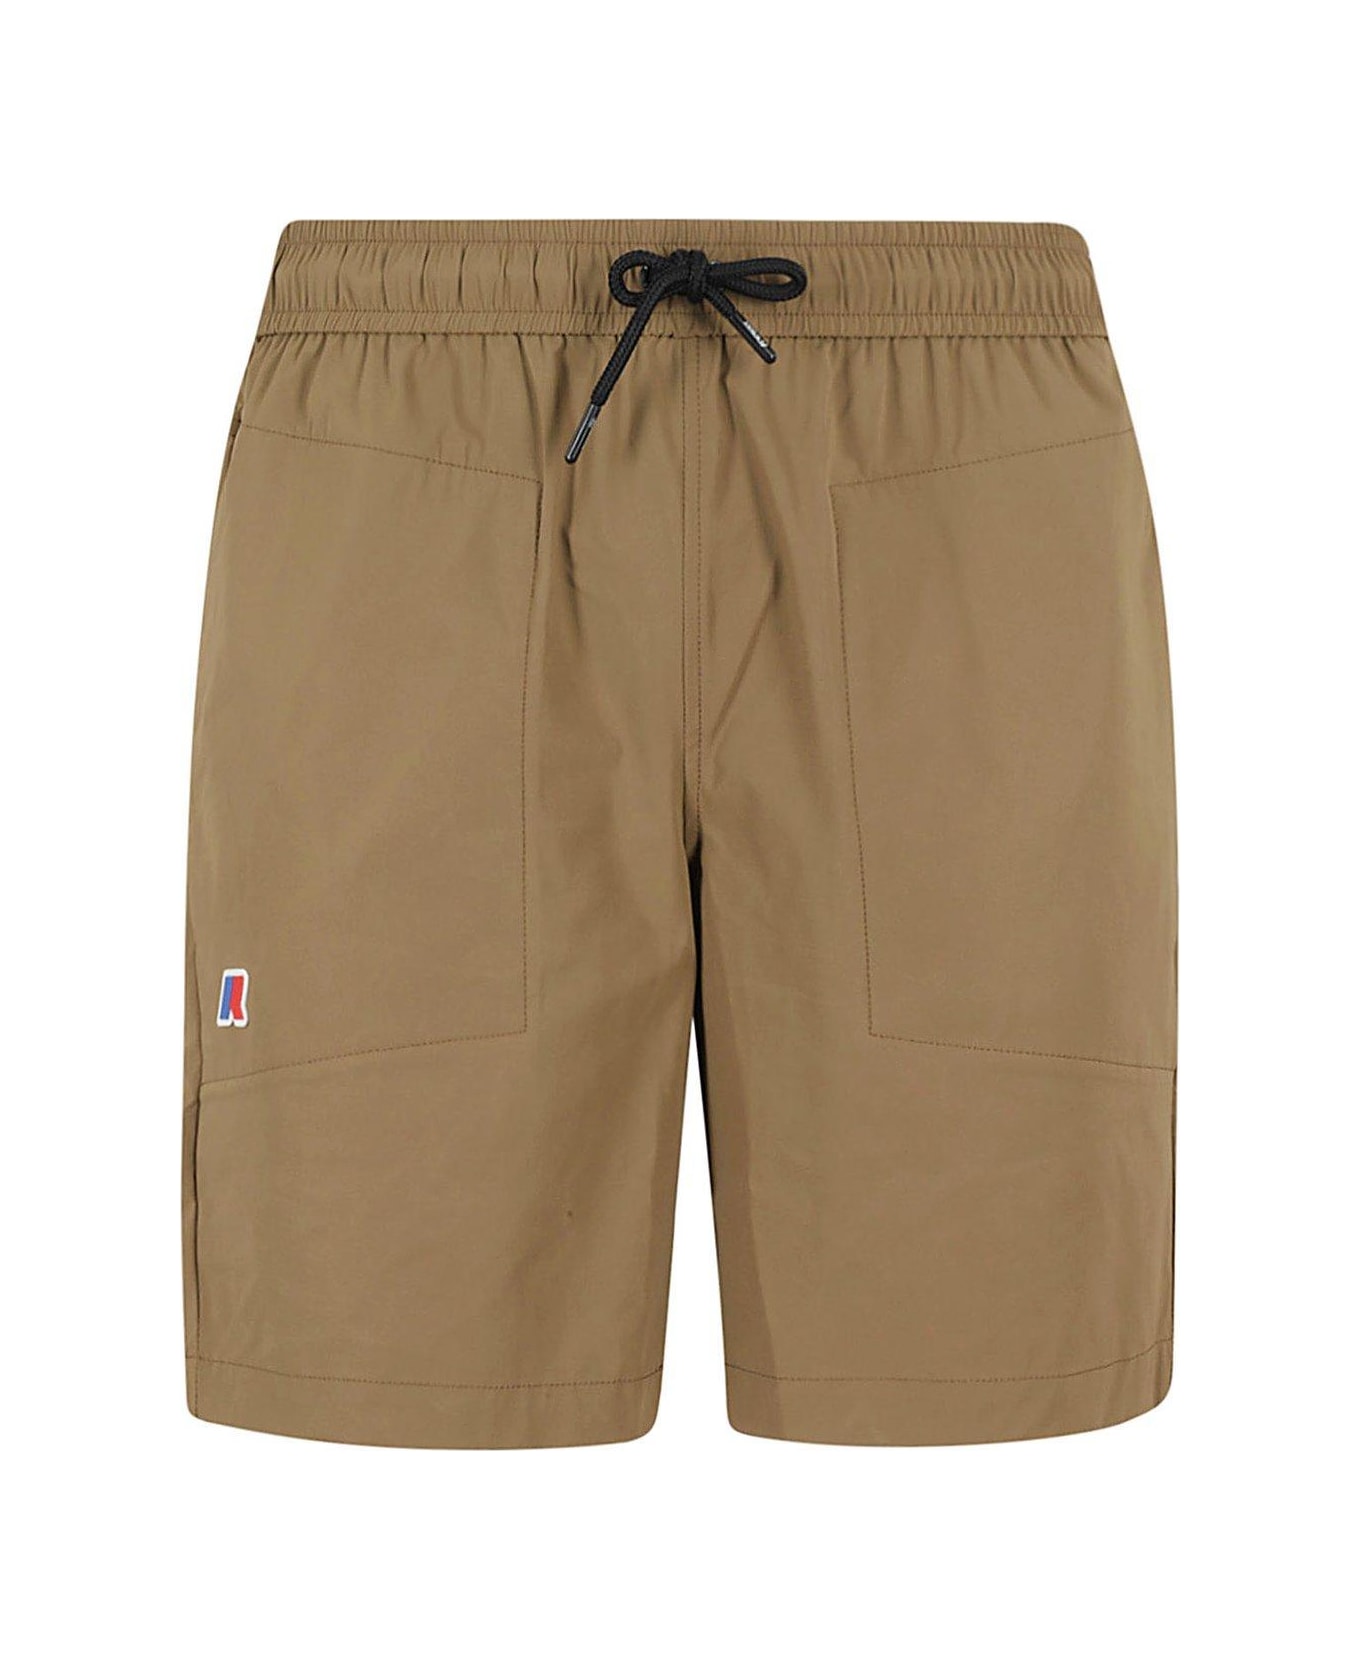 K-Way Elasticated Drawstring Waistband Shorts - Brown Corda